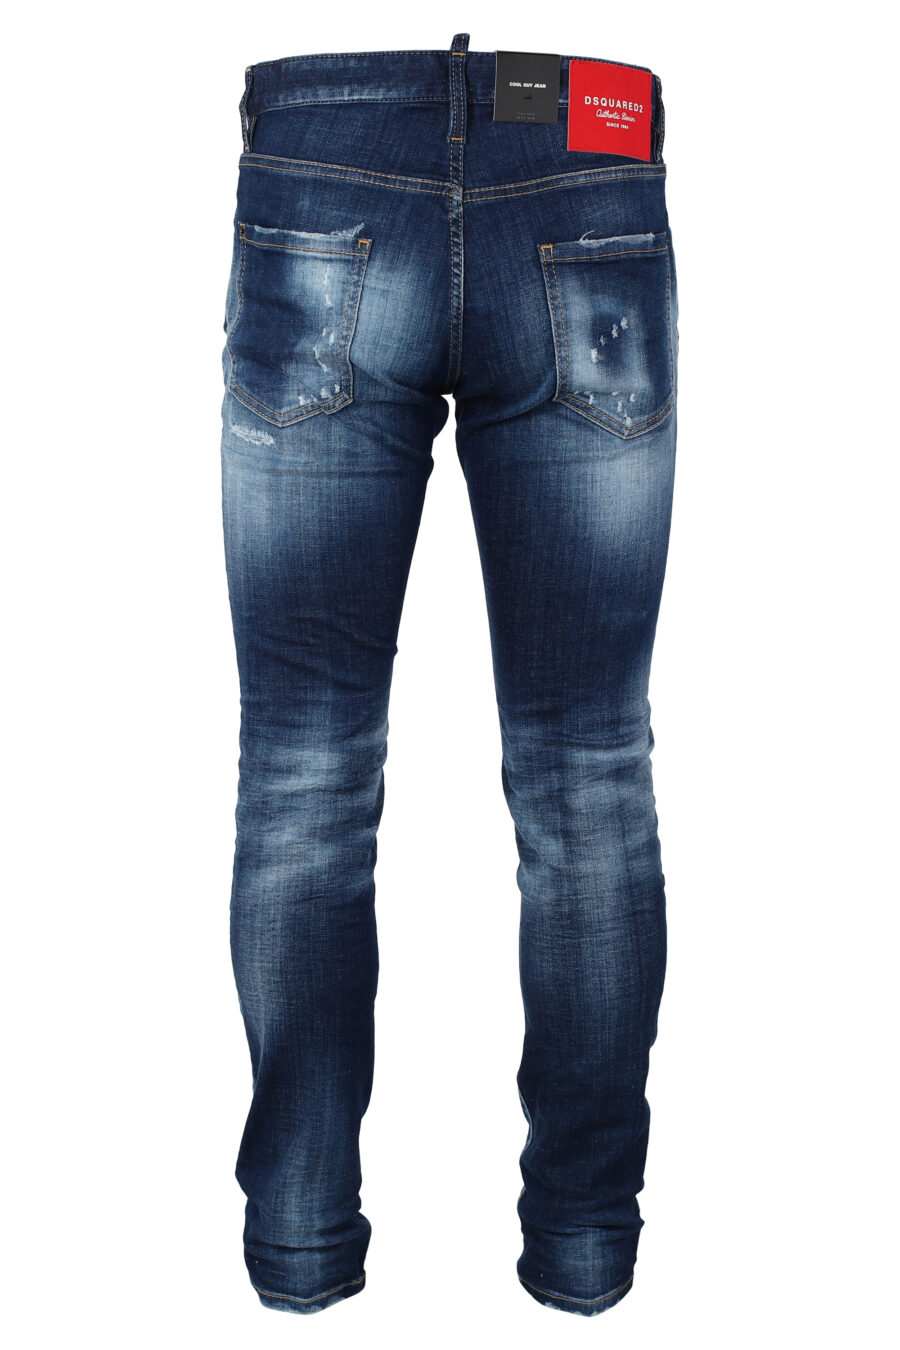 Pantalón vaquero azul desgastado "cool guy jean" - IMG 9875